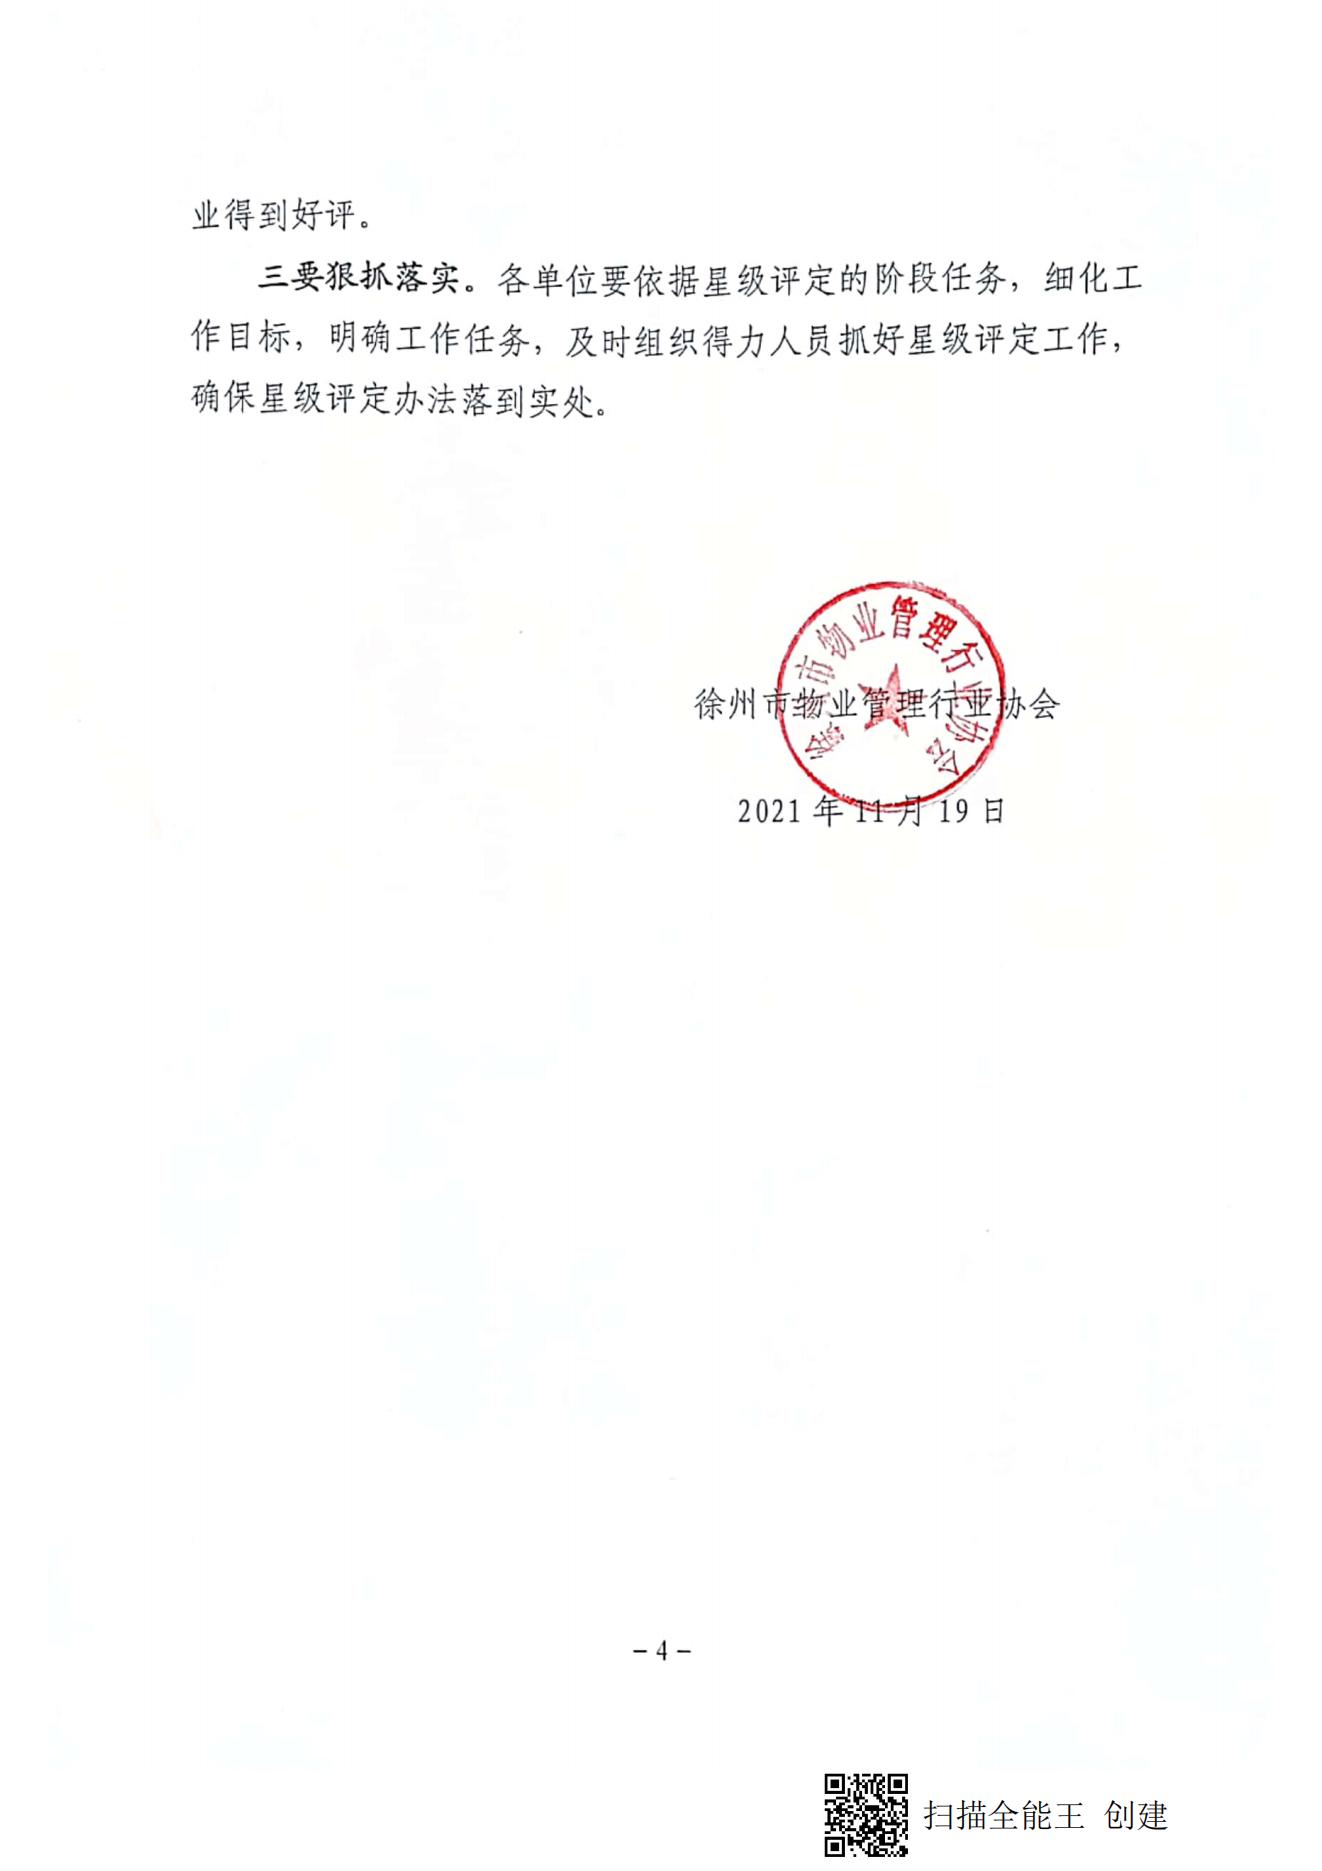 关于开展徐州市第二批物业服务企业星级评定复审工作的通知(图4)